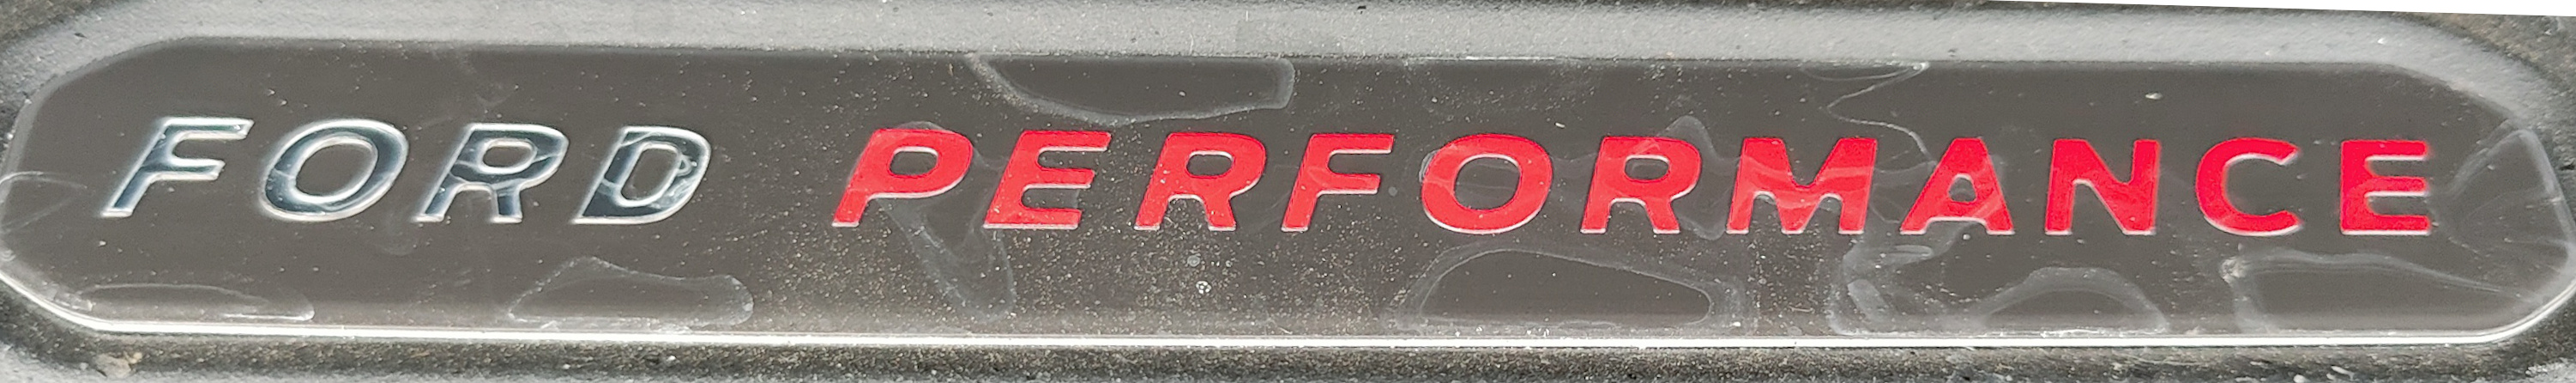 Ford Fiesta ST | Avis Düsseldorf